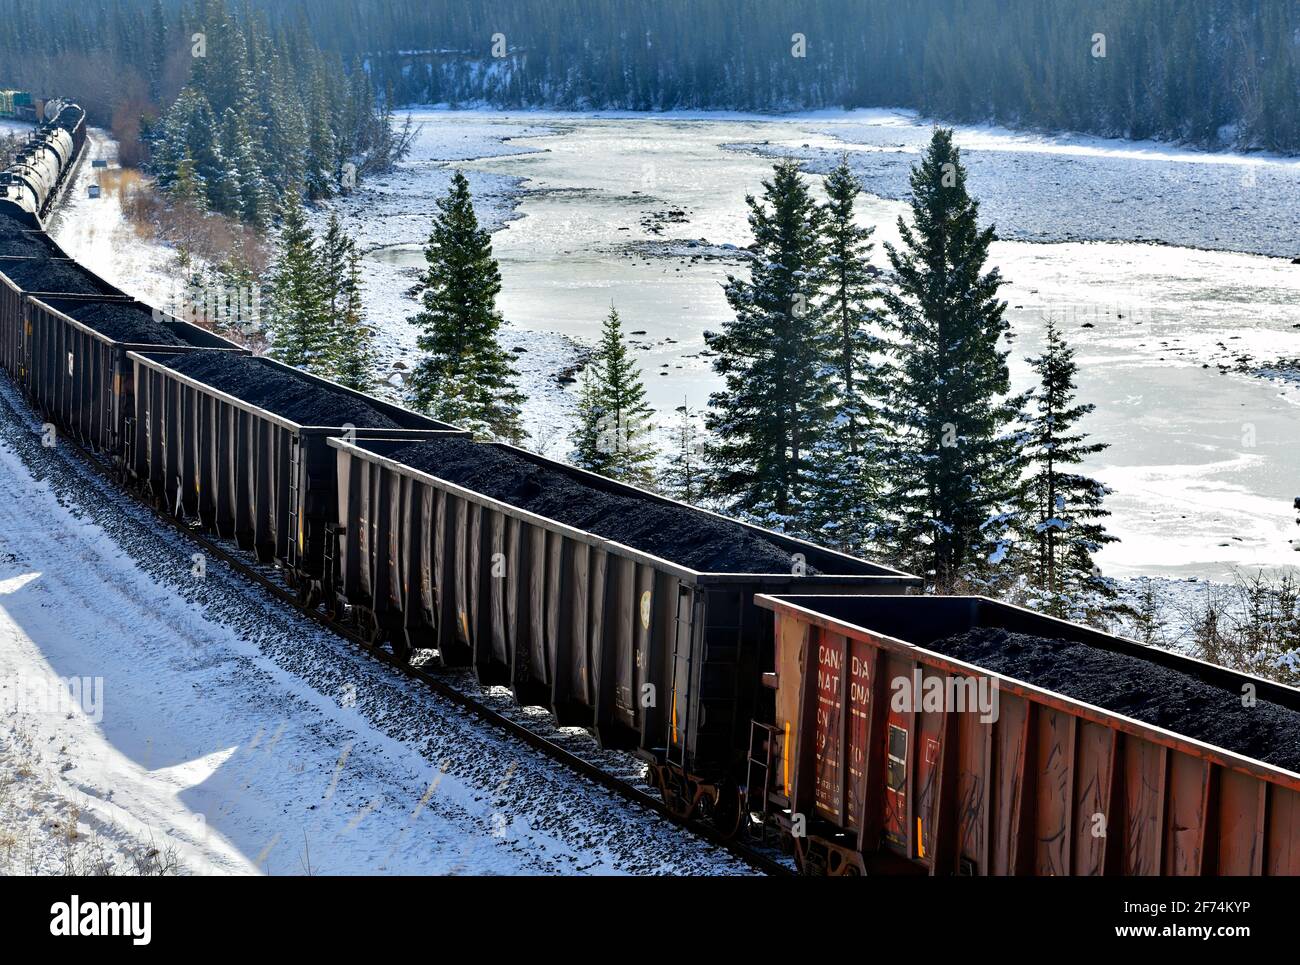 Un tren de carga nacional canadiense cargado con coches de carbón mientras viaja alrededor de una esquina en una zona boscosa de las montañas rocosas de Alberta Canadá. Foto de stock